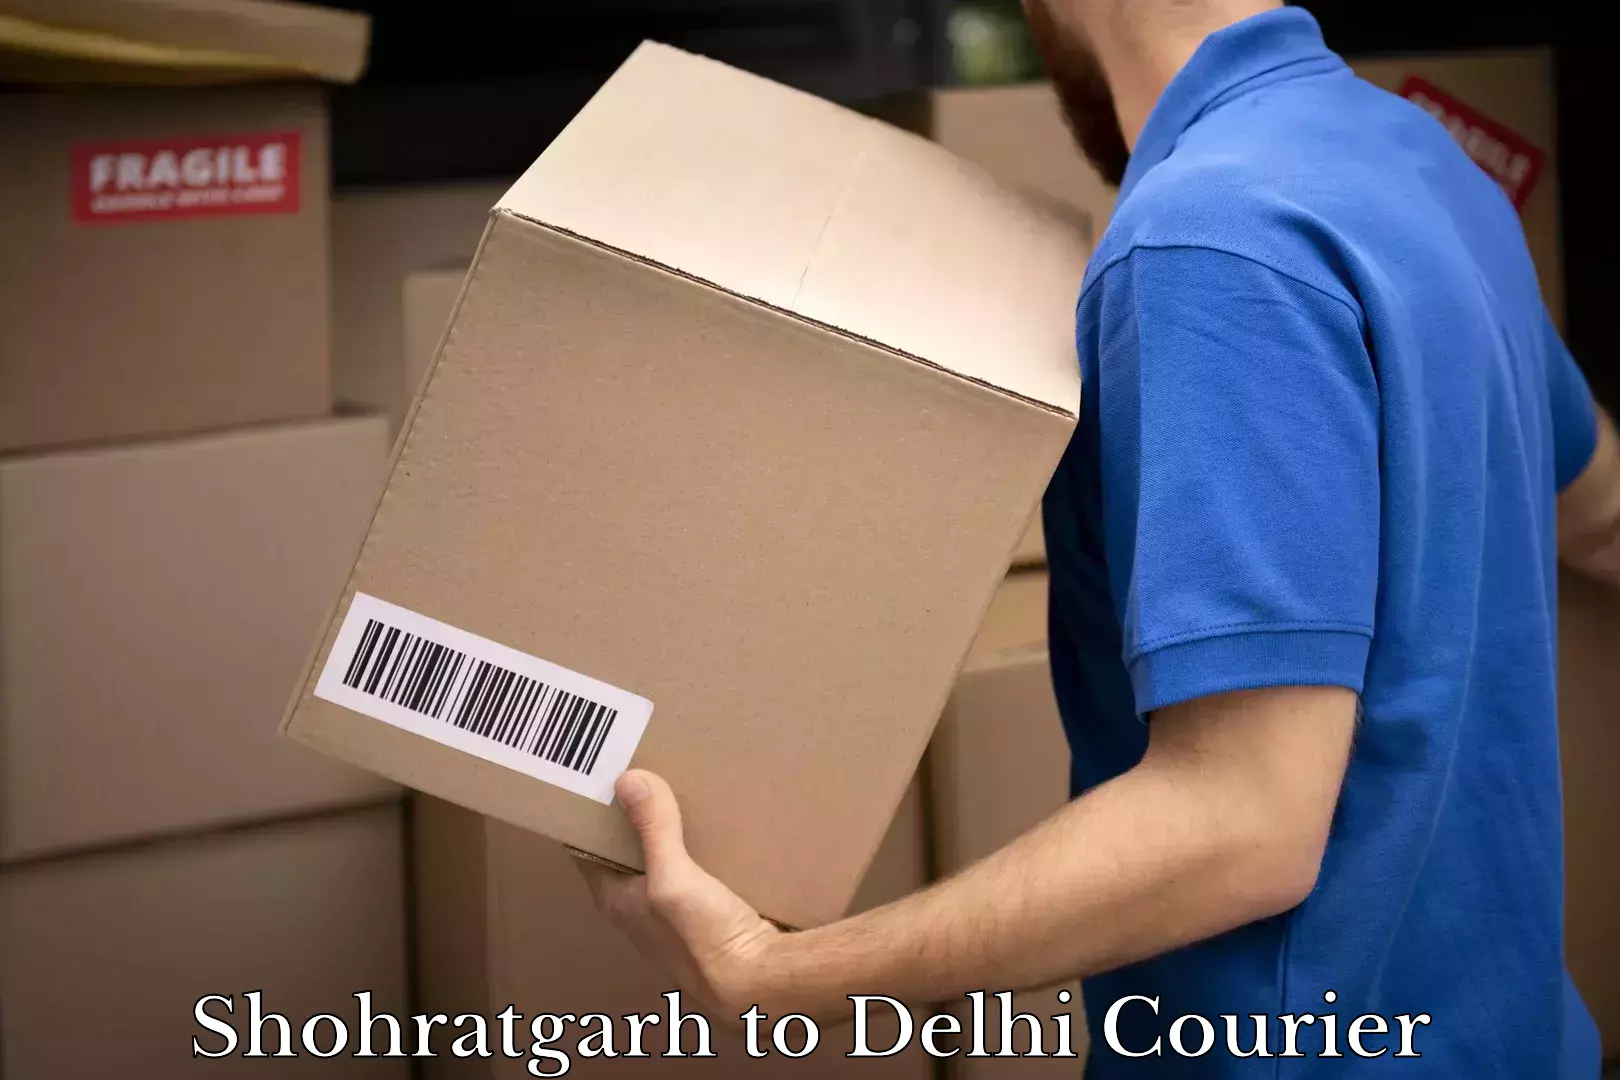 Cash on delivery service Shohratgarh to Delhi